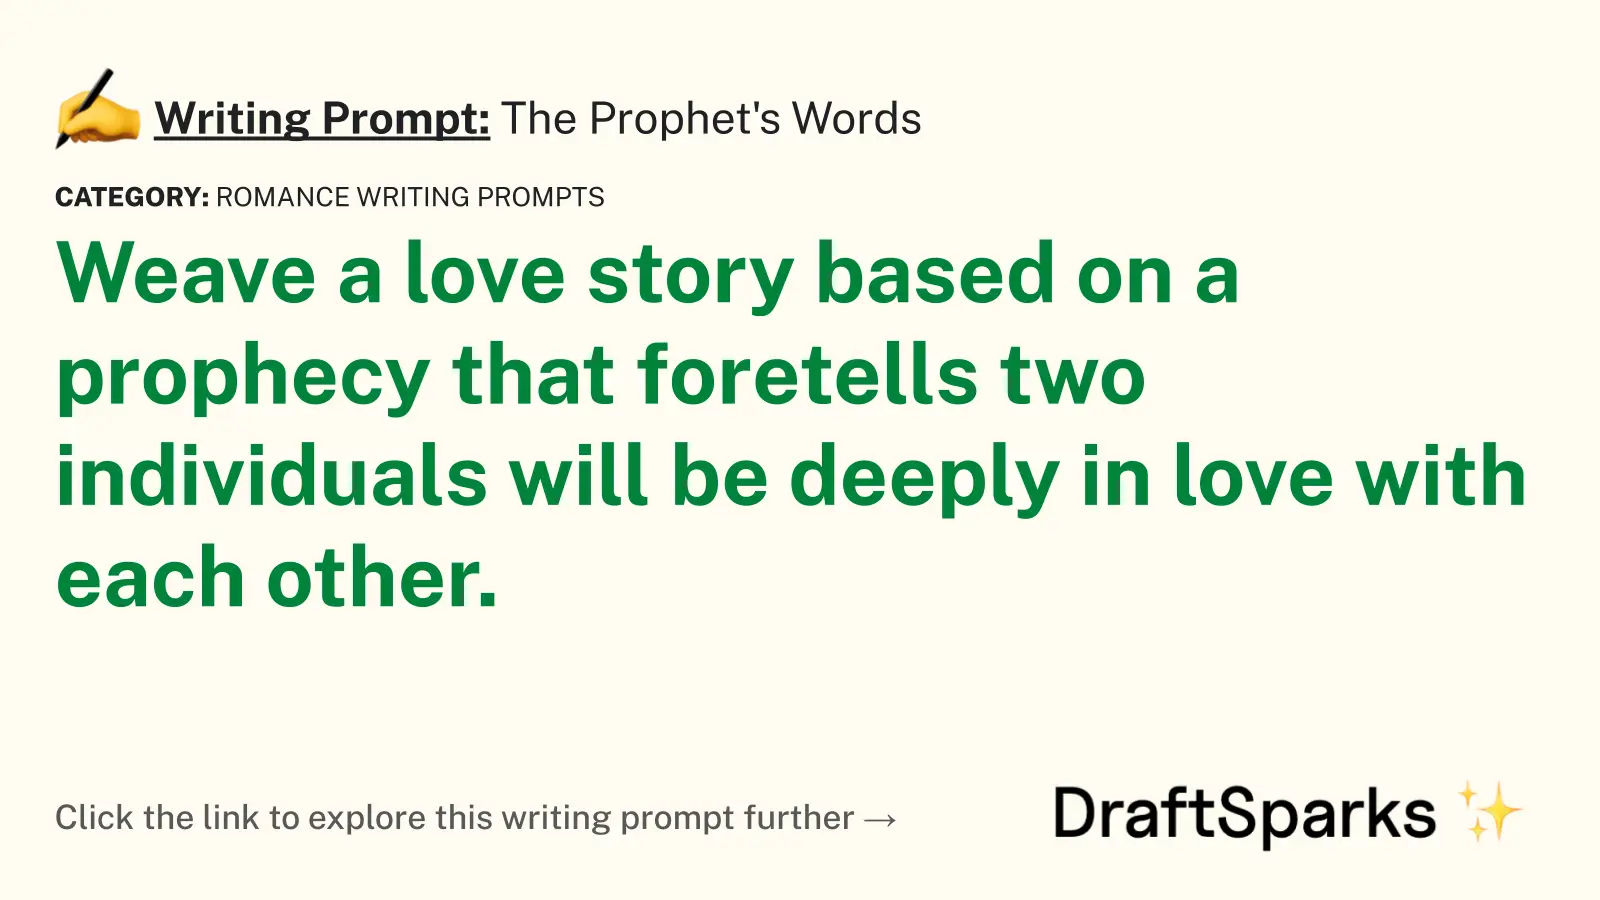 The Prophet’s Words